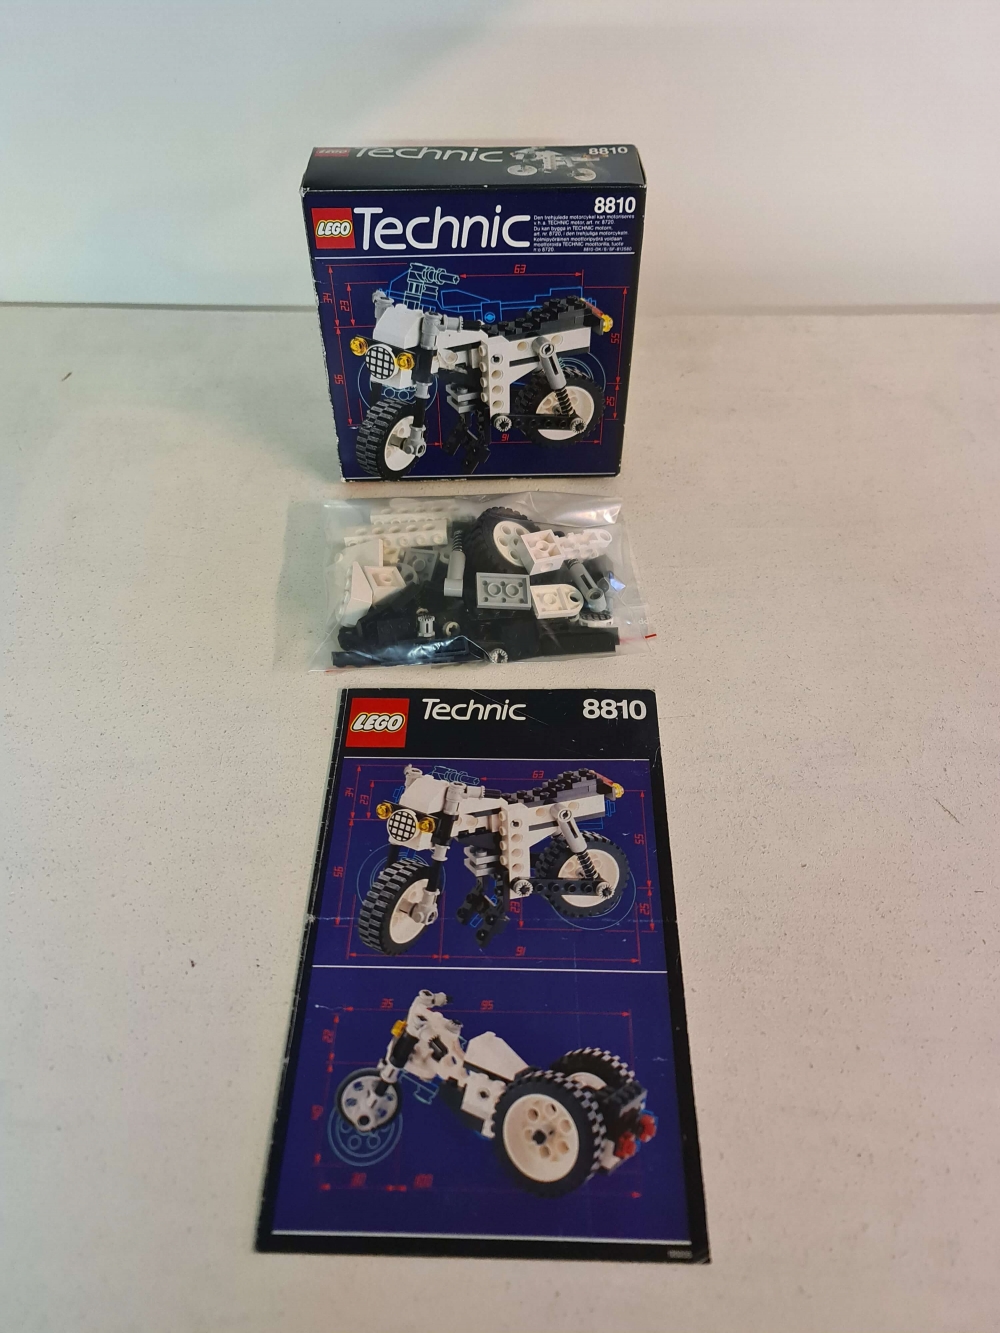 Sett 8810 fra Lego Technic serien. Meget pent.

Komplett med manual og eske.